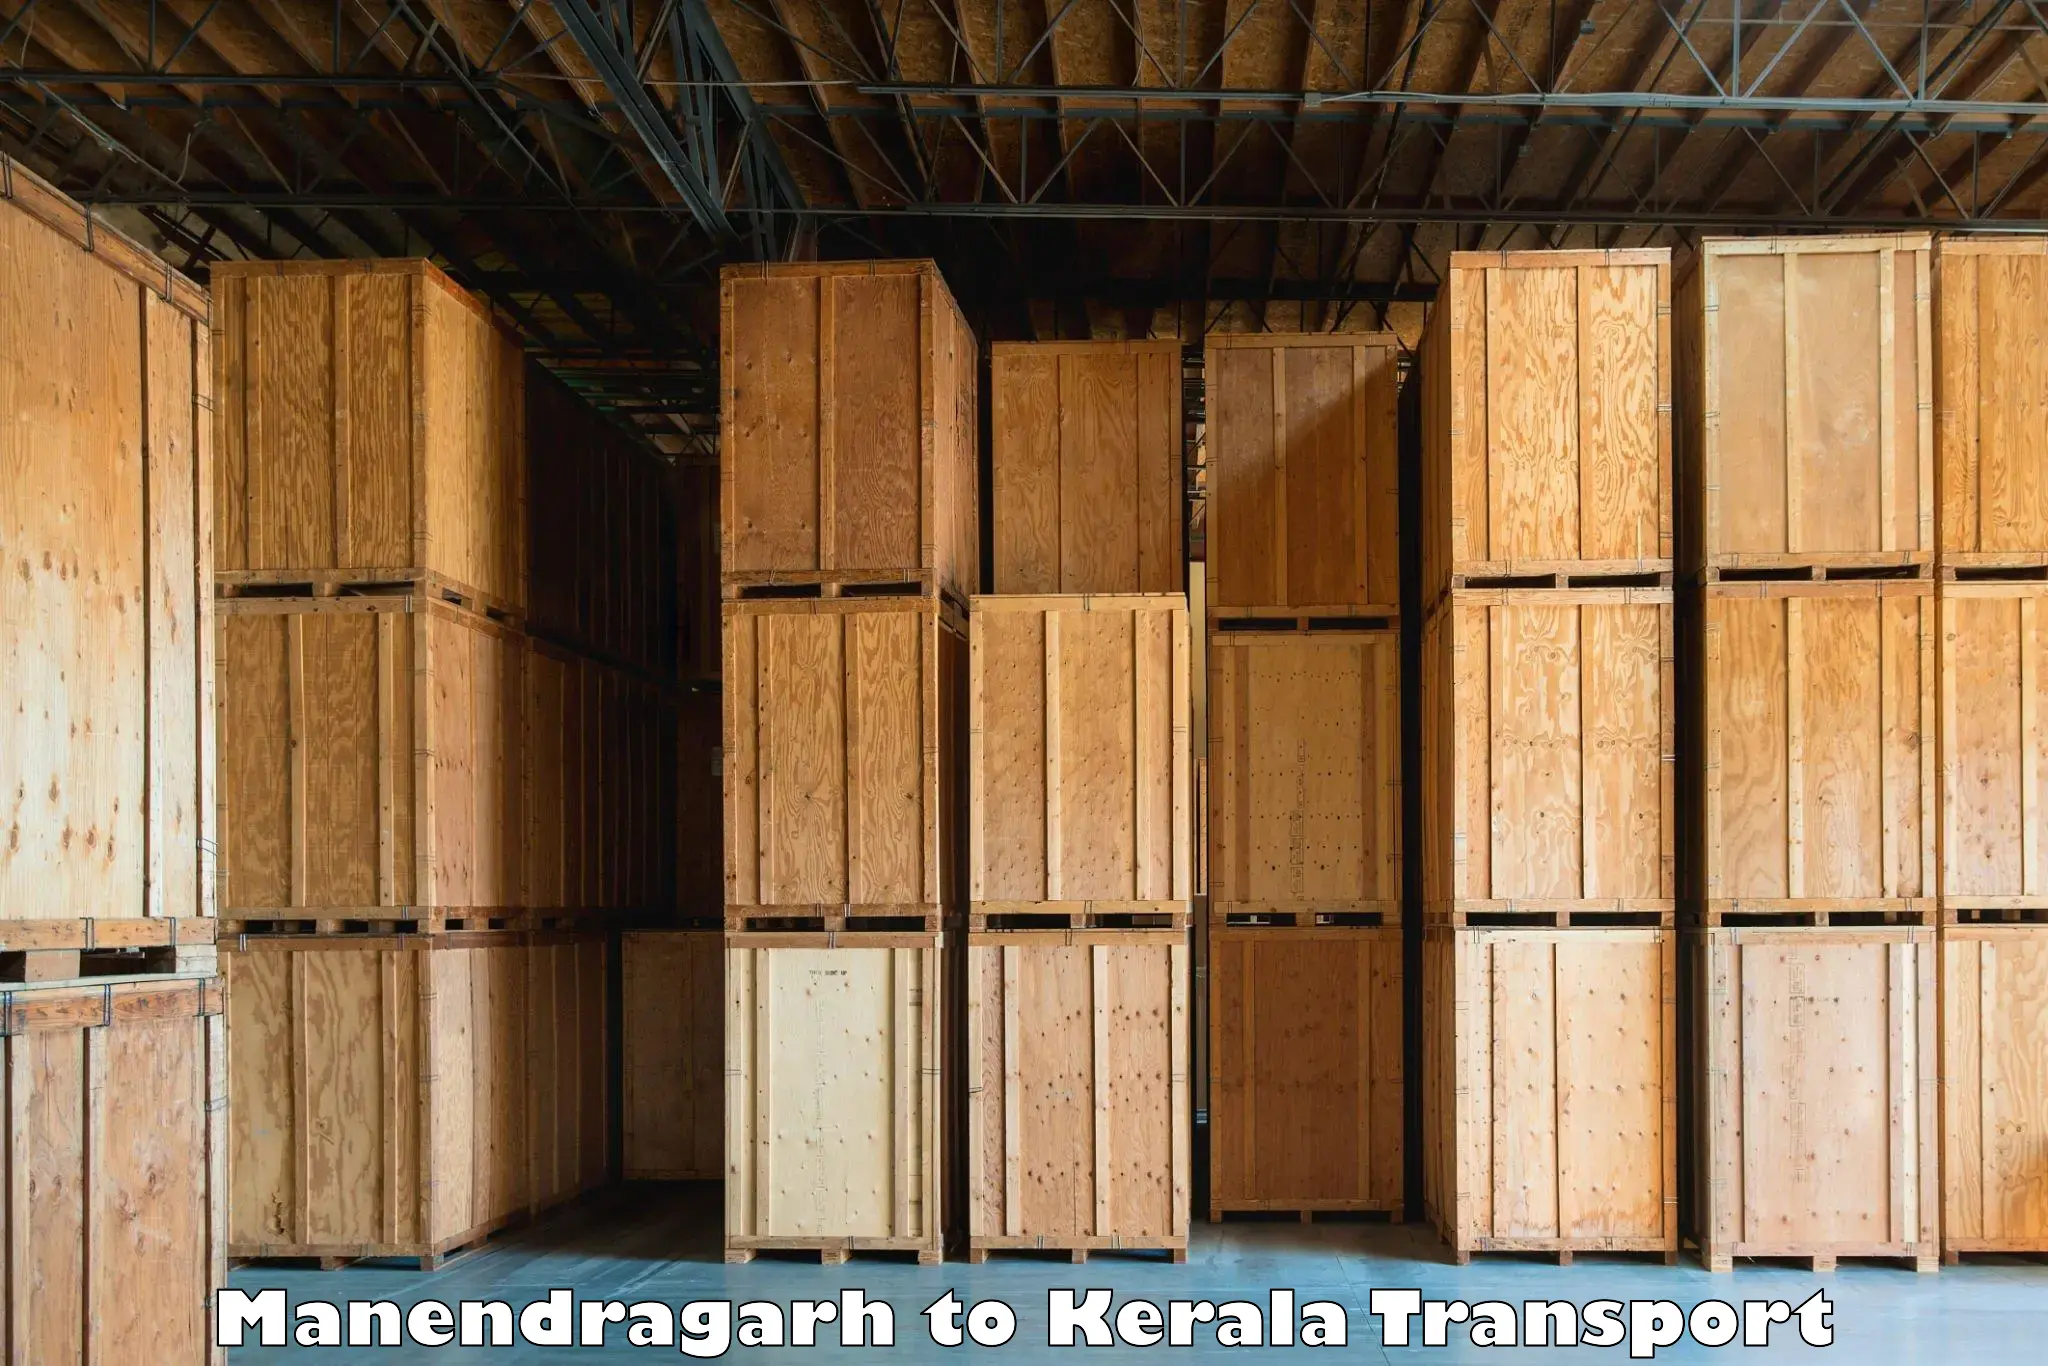 Daily transport service Manendragarh to Kottarakkara